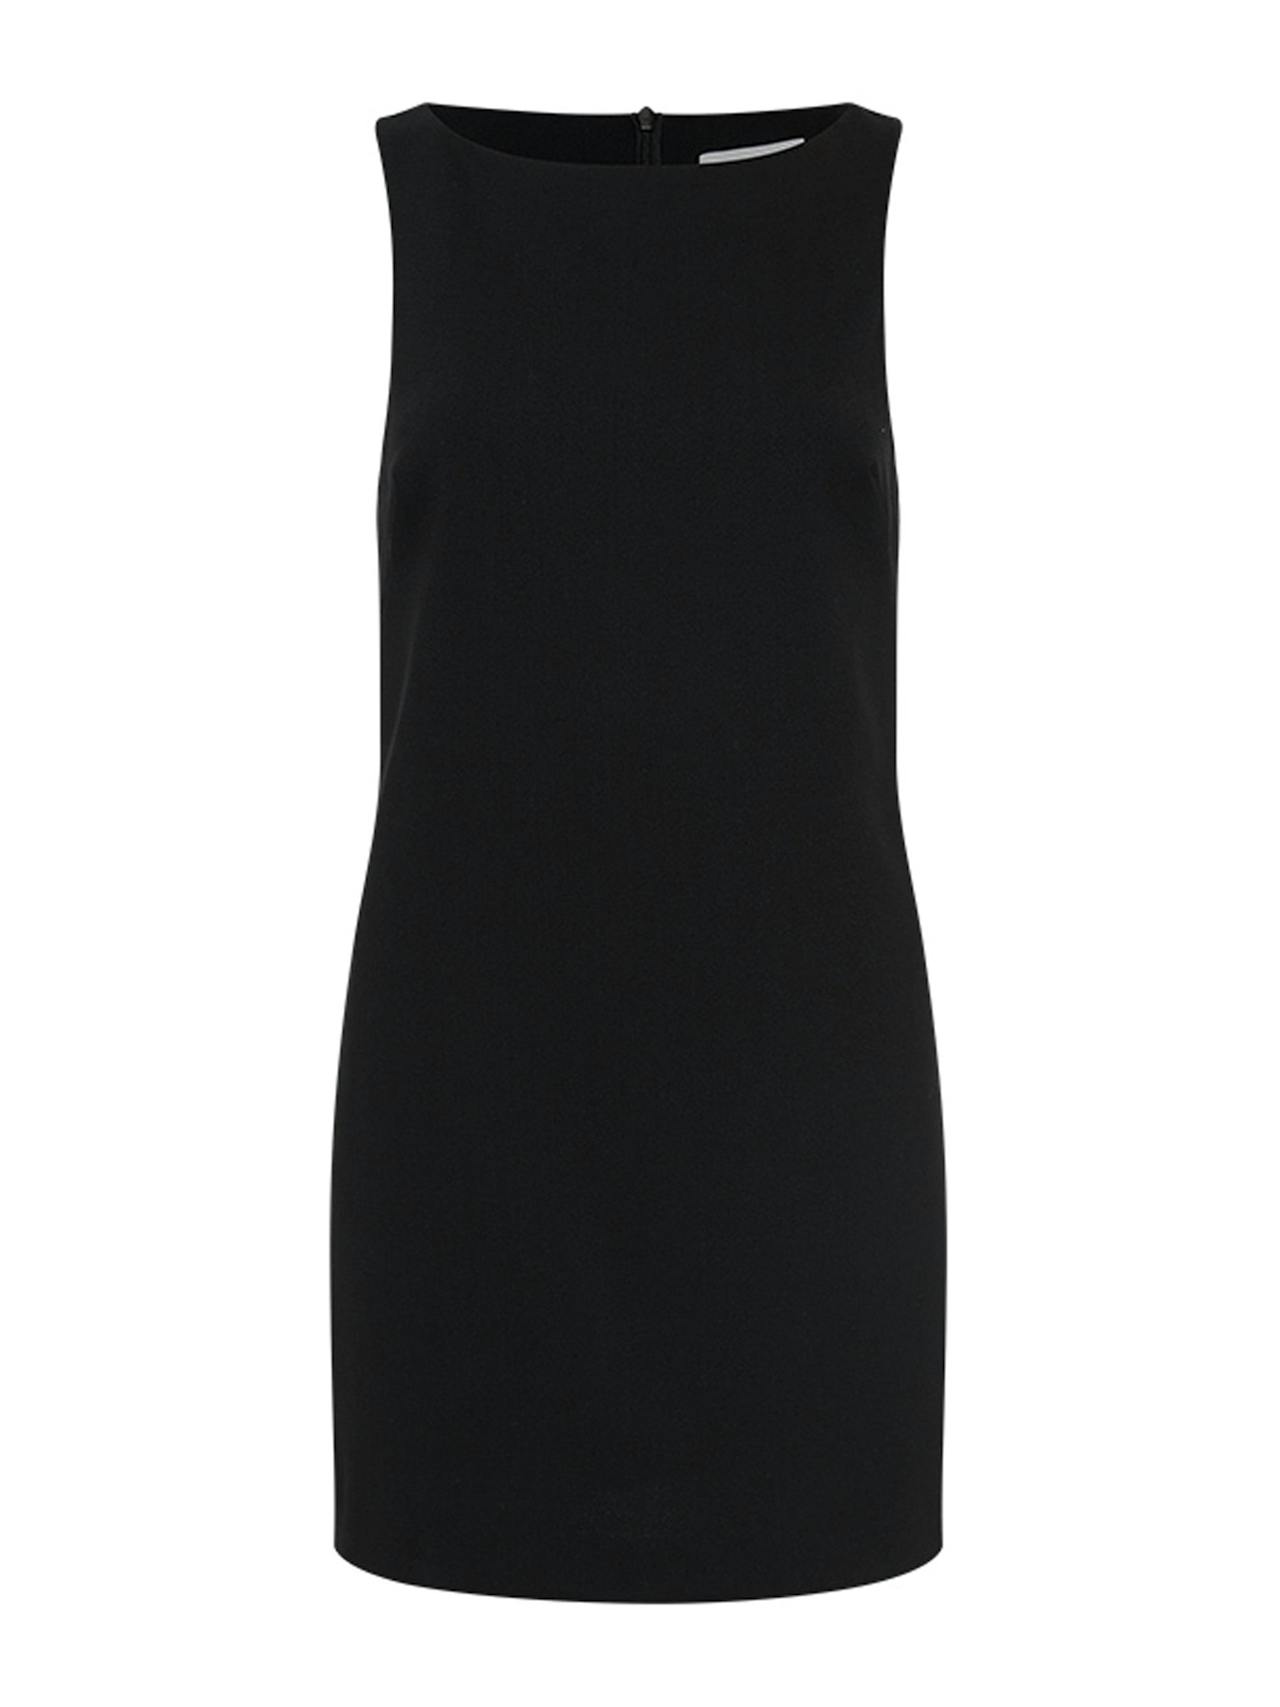 Black crepe mini shift dress